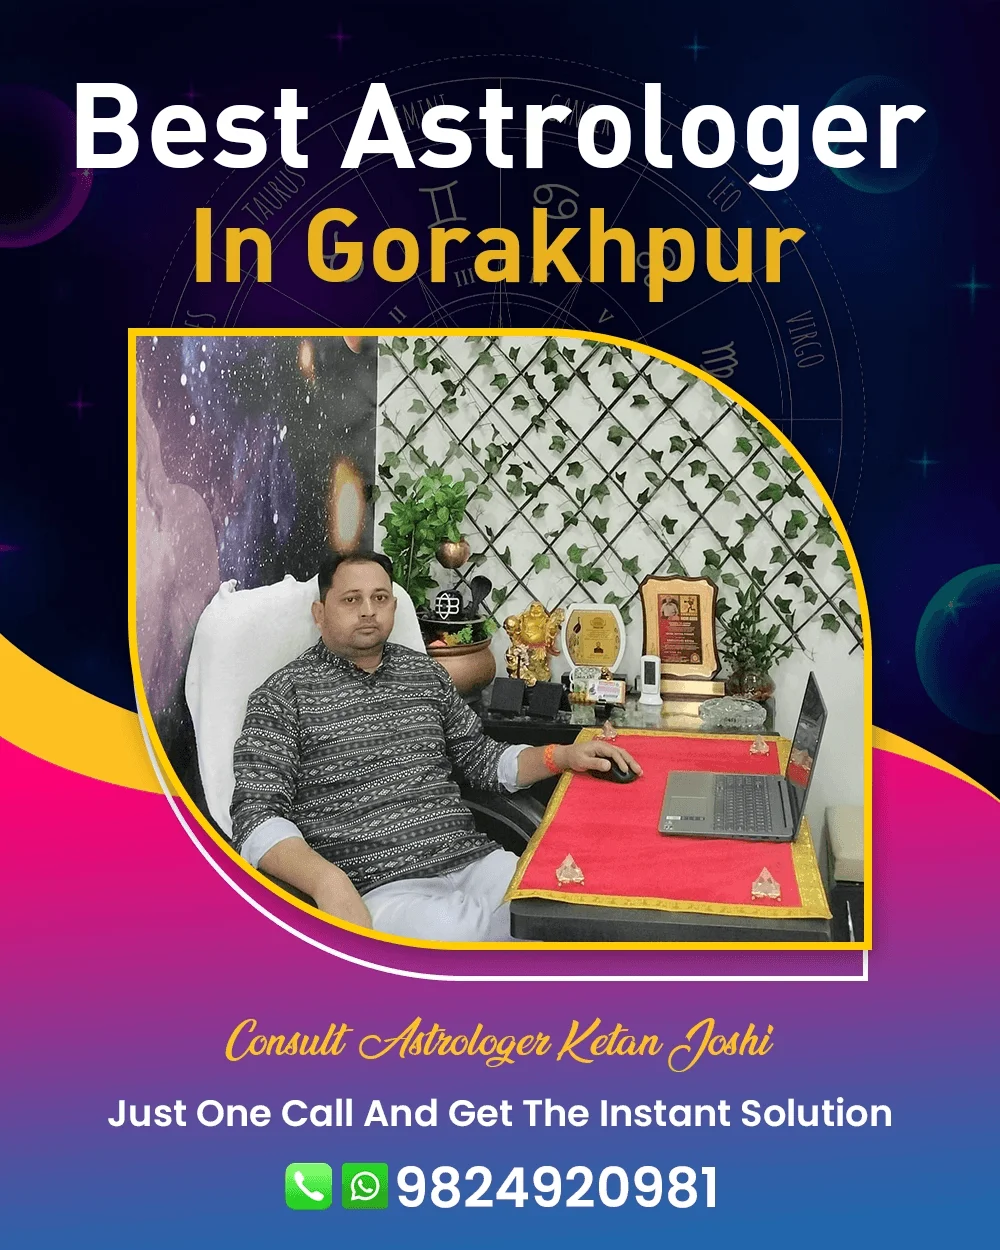 Best Astrologer In Gorakhpur